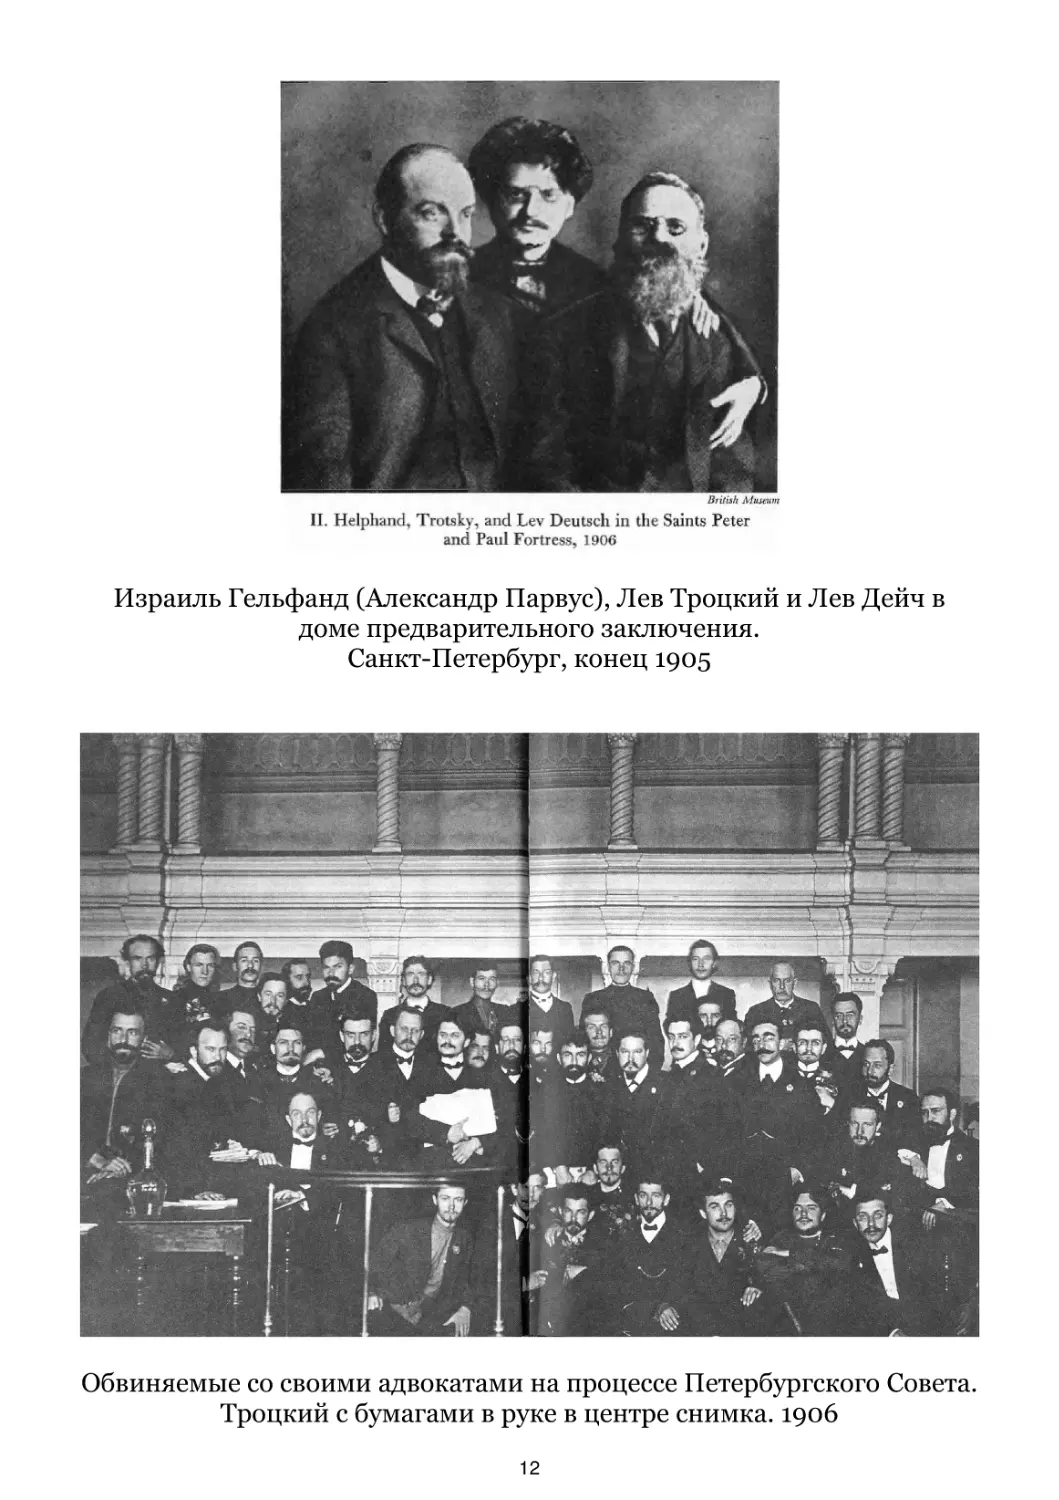 Обвиняемые со своими адвокатами на процессе Петербургского Совета. 1906